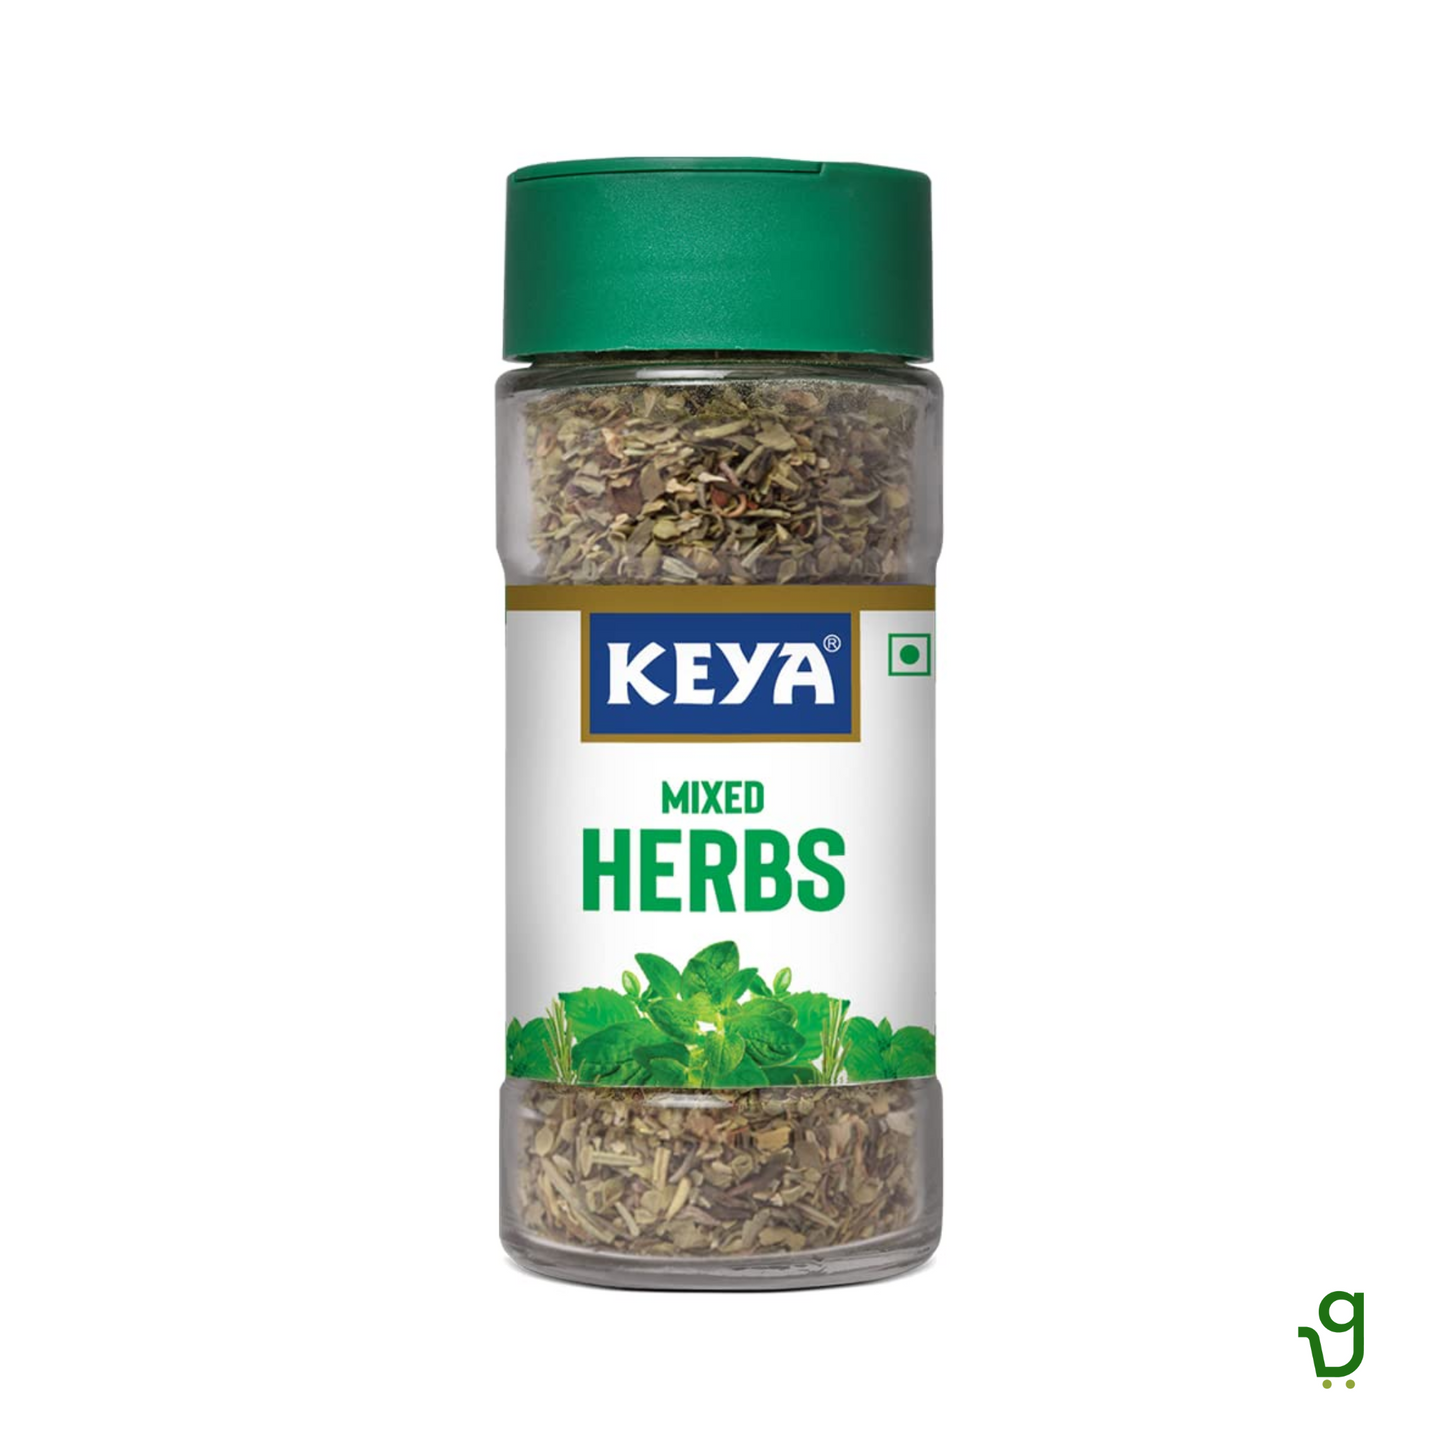 Keya Mixed Herbs 25g